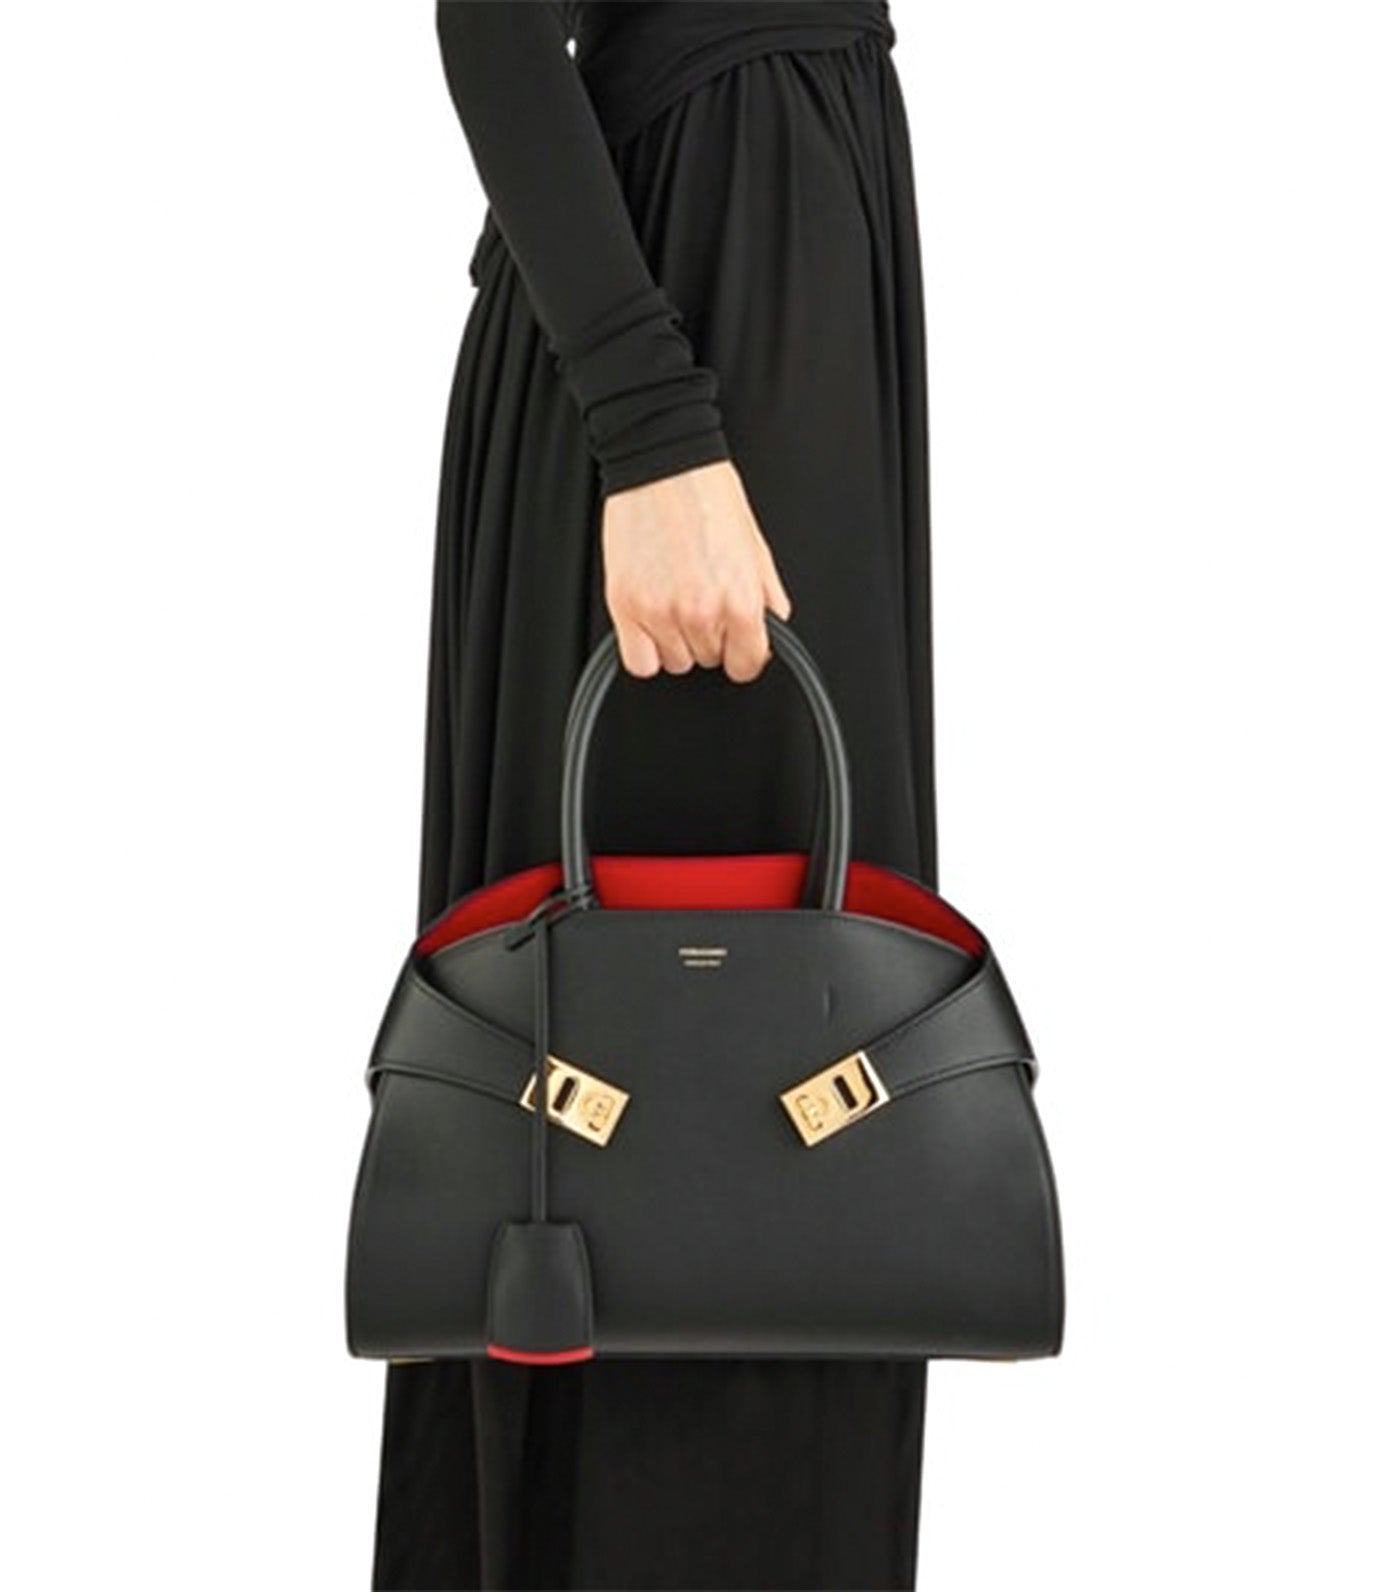 Hug Handbag S Black/Flame Red